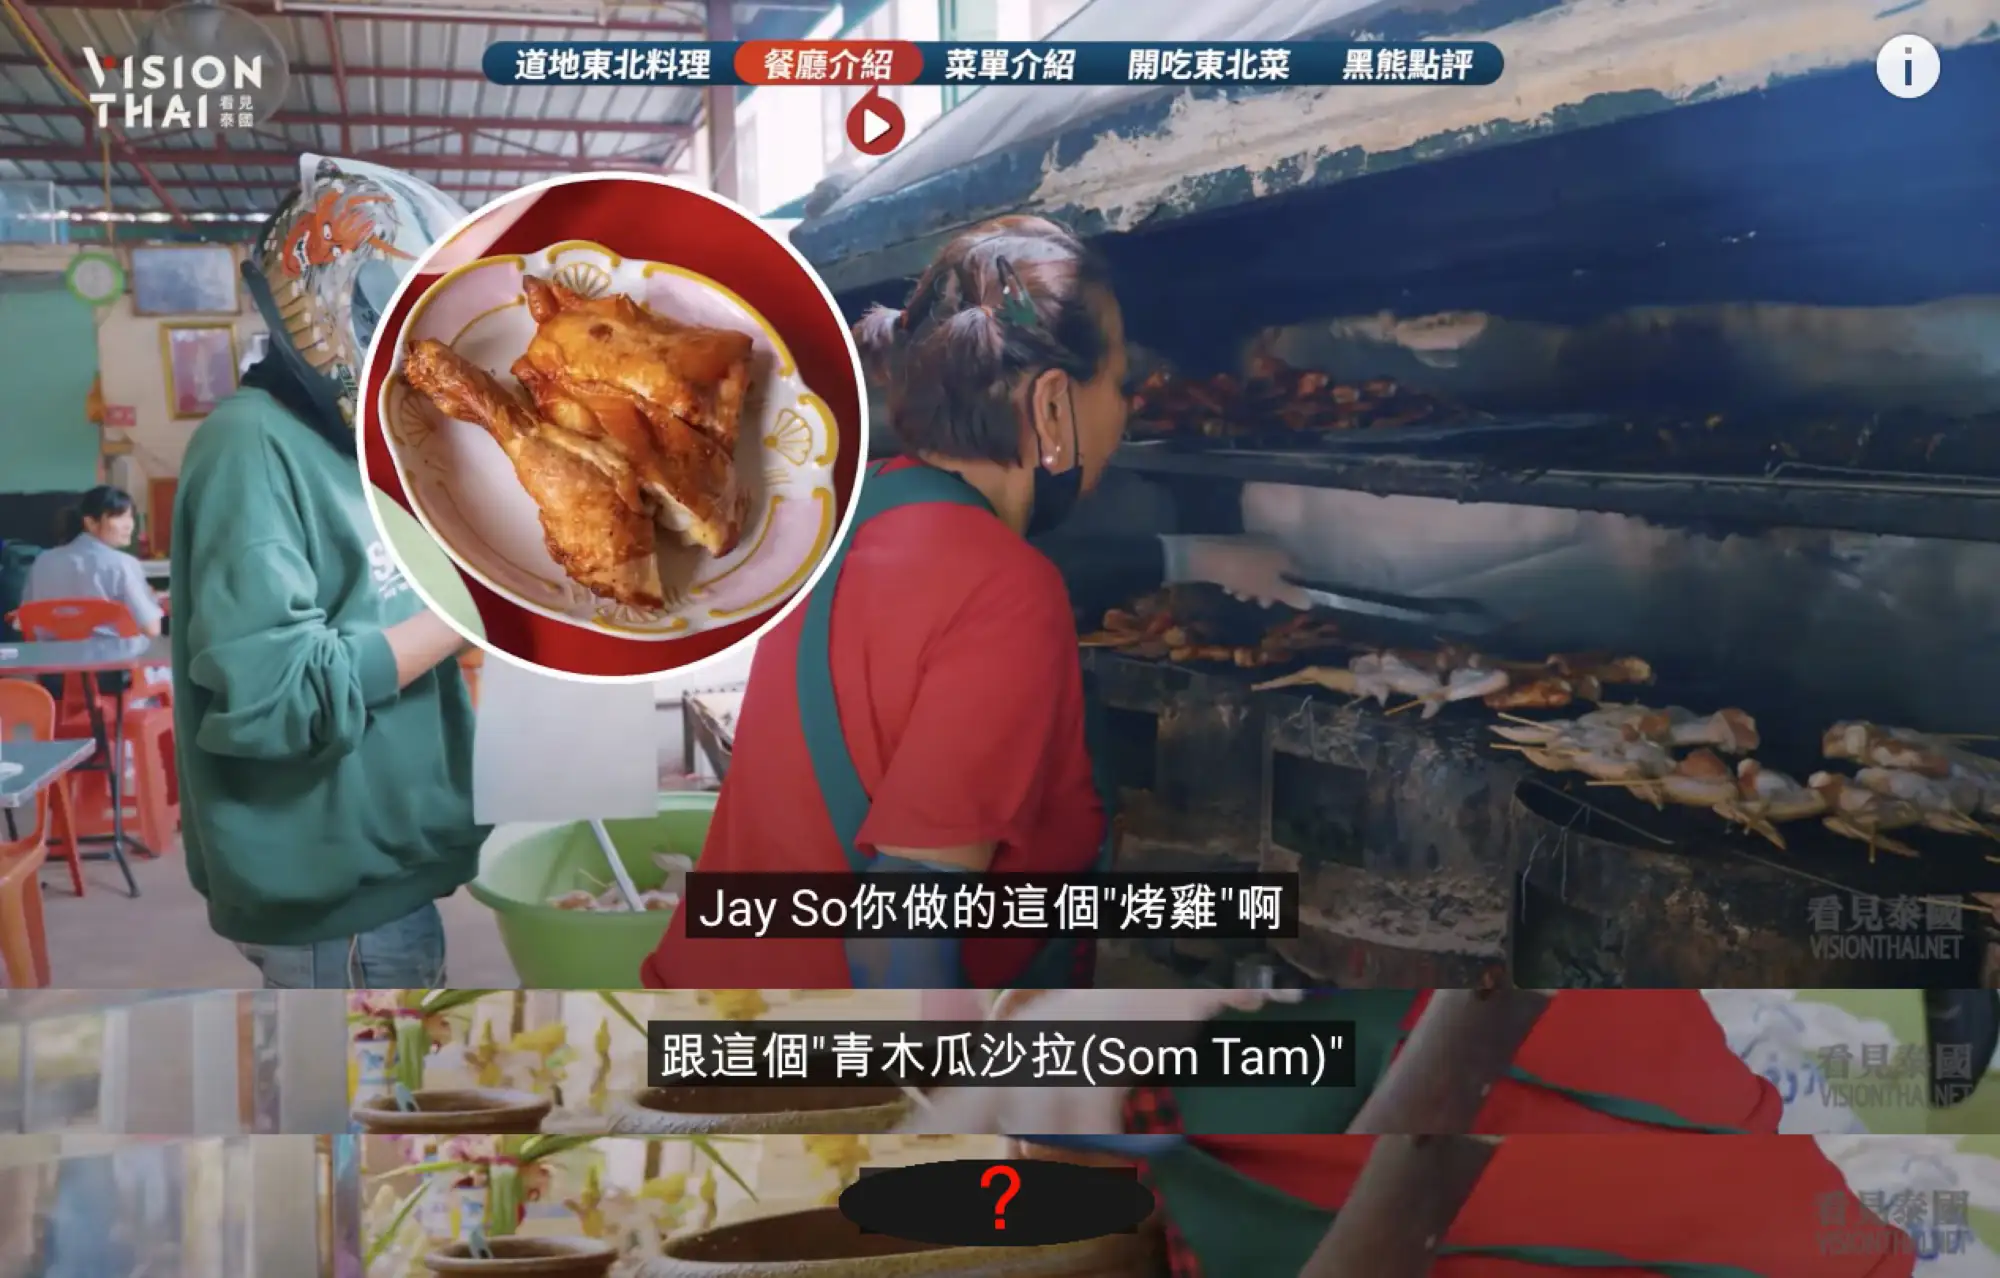 客人說了什麼，讓老闆轉型開這家Som Tam Jay So餐廳？（圖片來源：黑熊V泰國影片截圖）